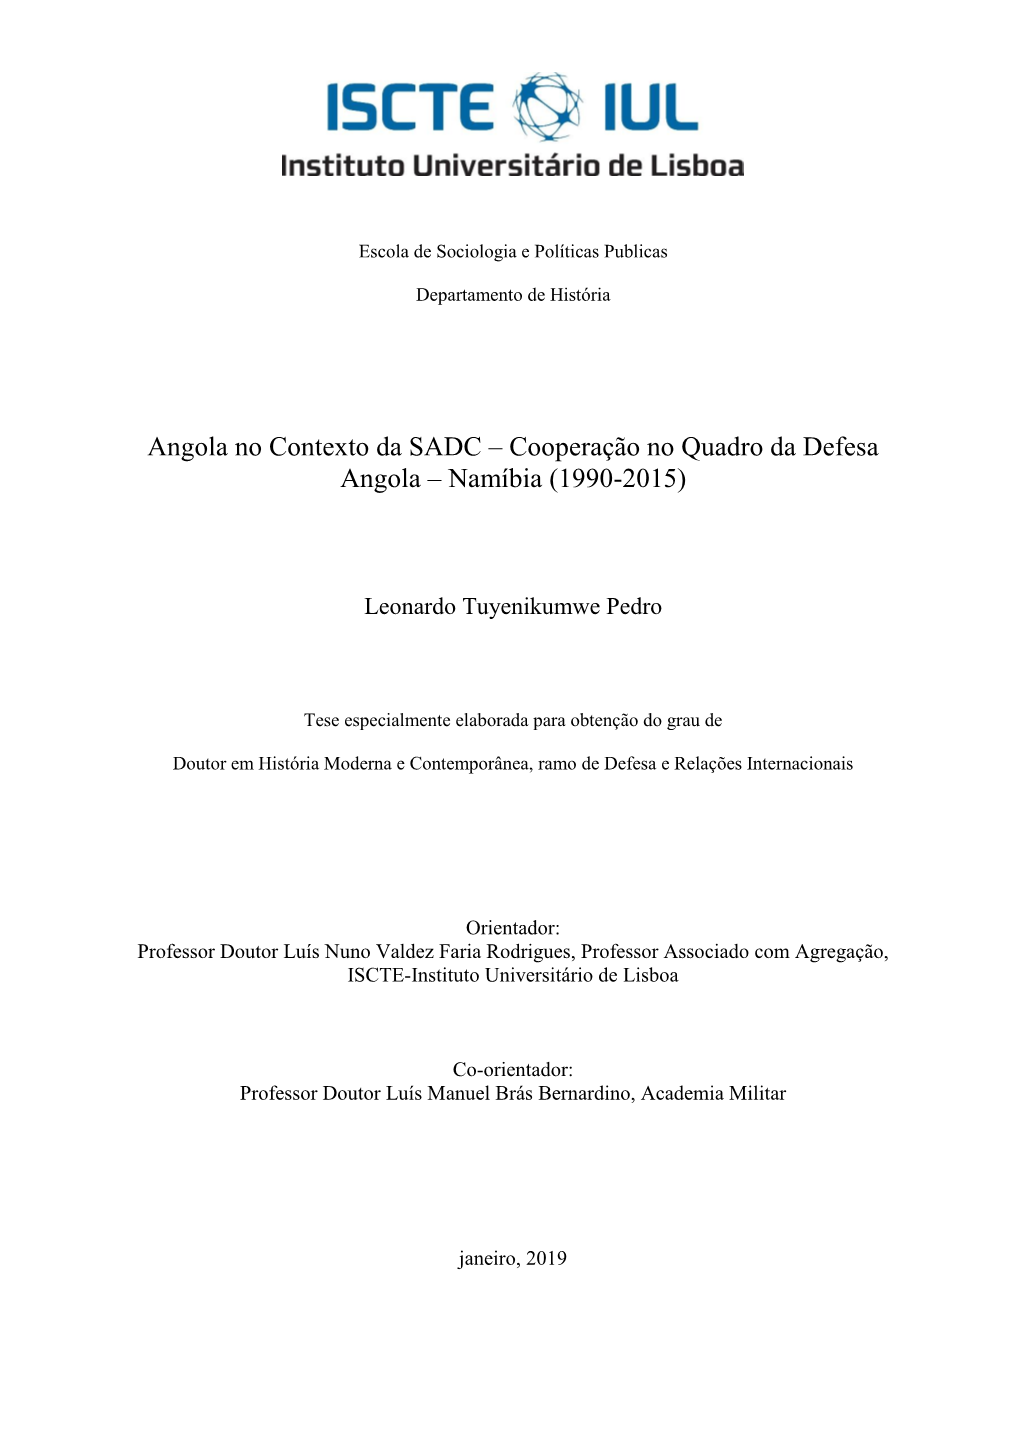 Cooperação No Quadro Da Defesa Angola – Namíbia (1990-2015)